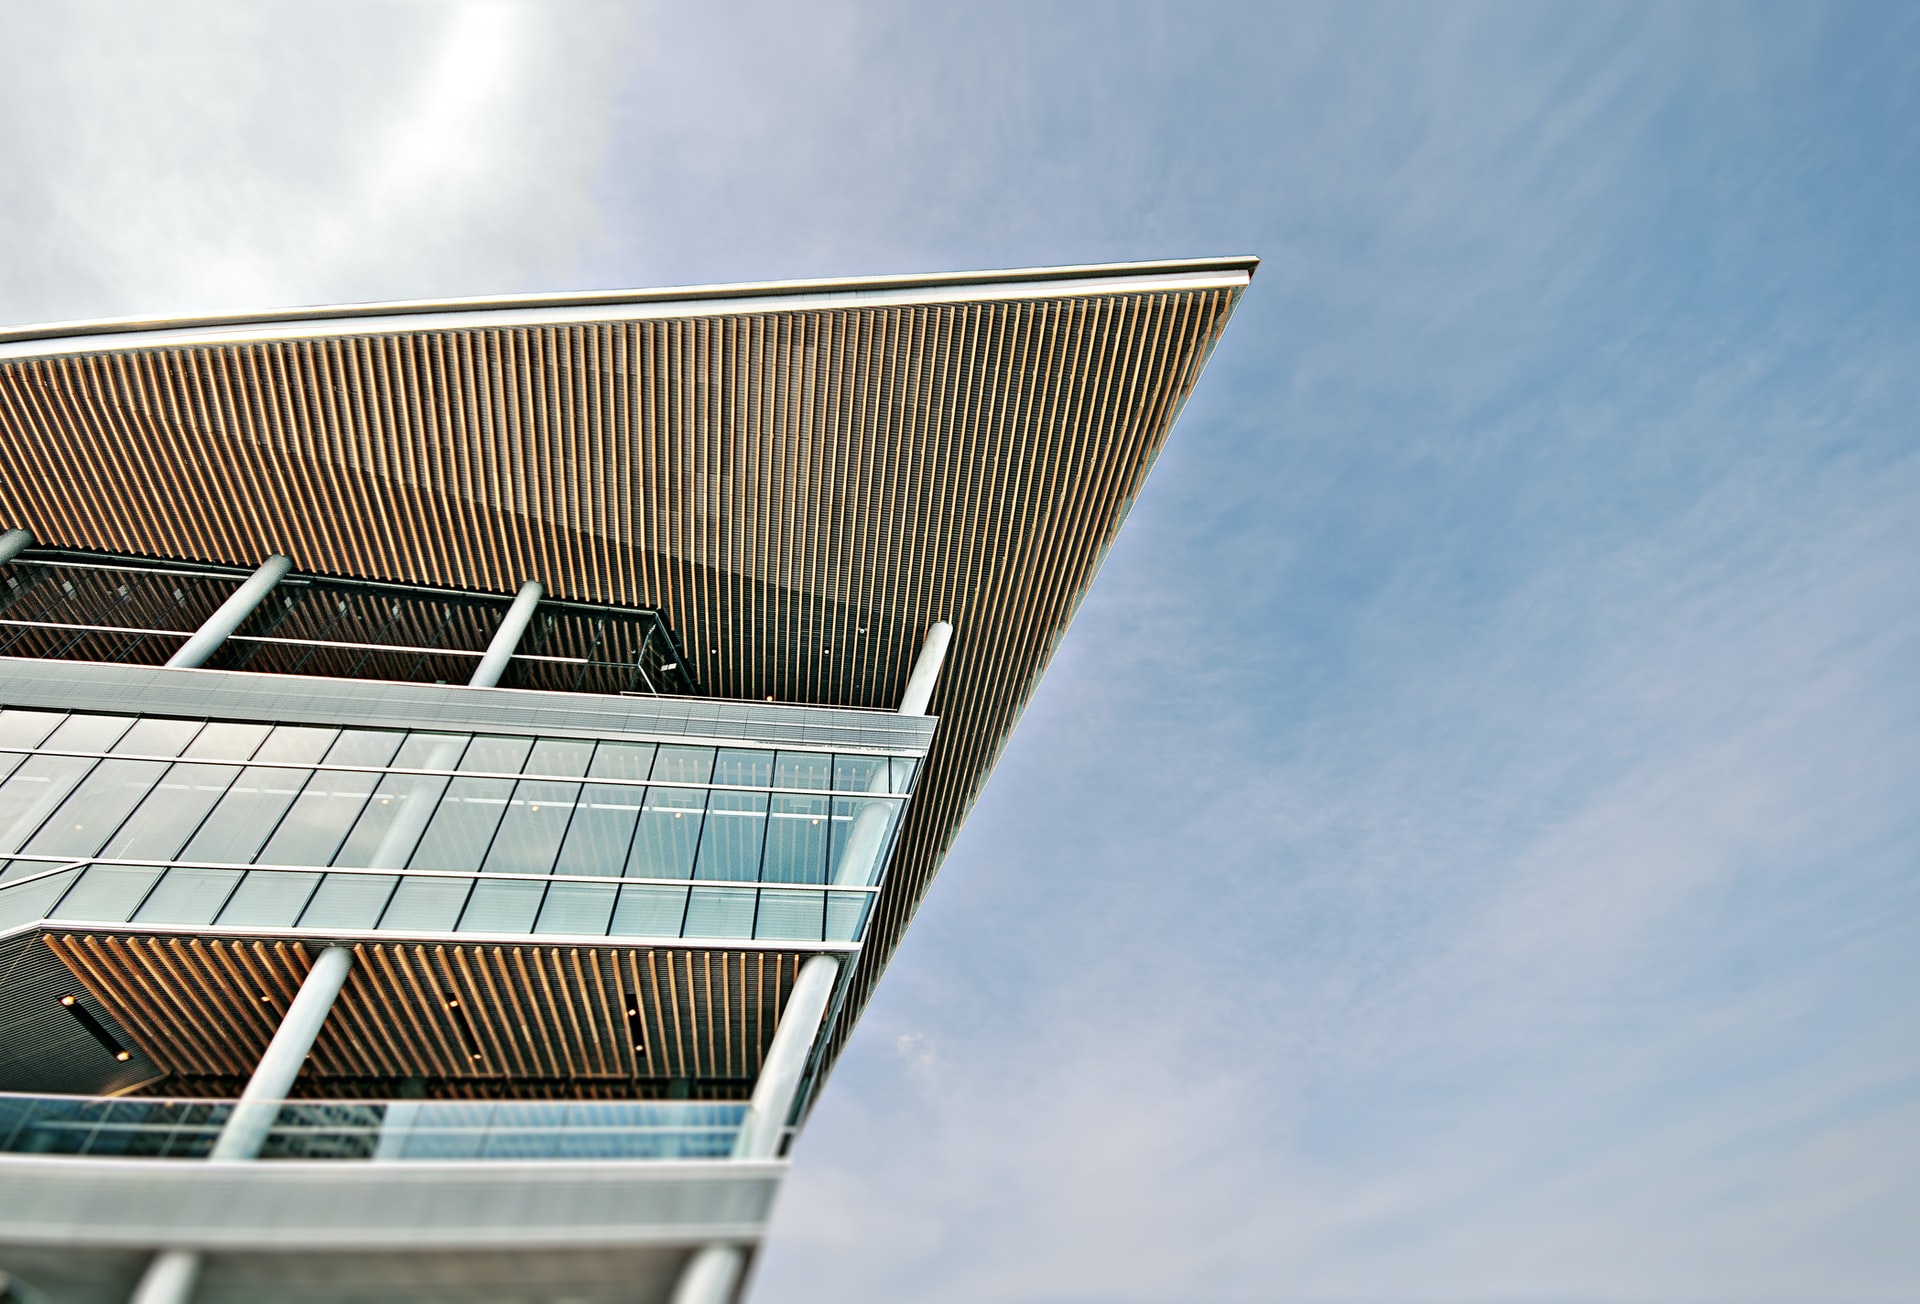 Photo of angular building by Scott Webb on Unsplash